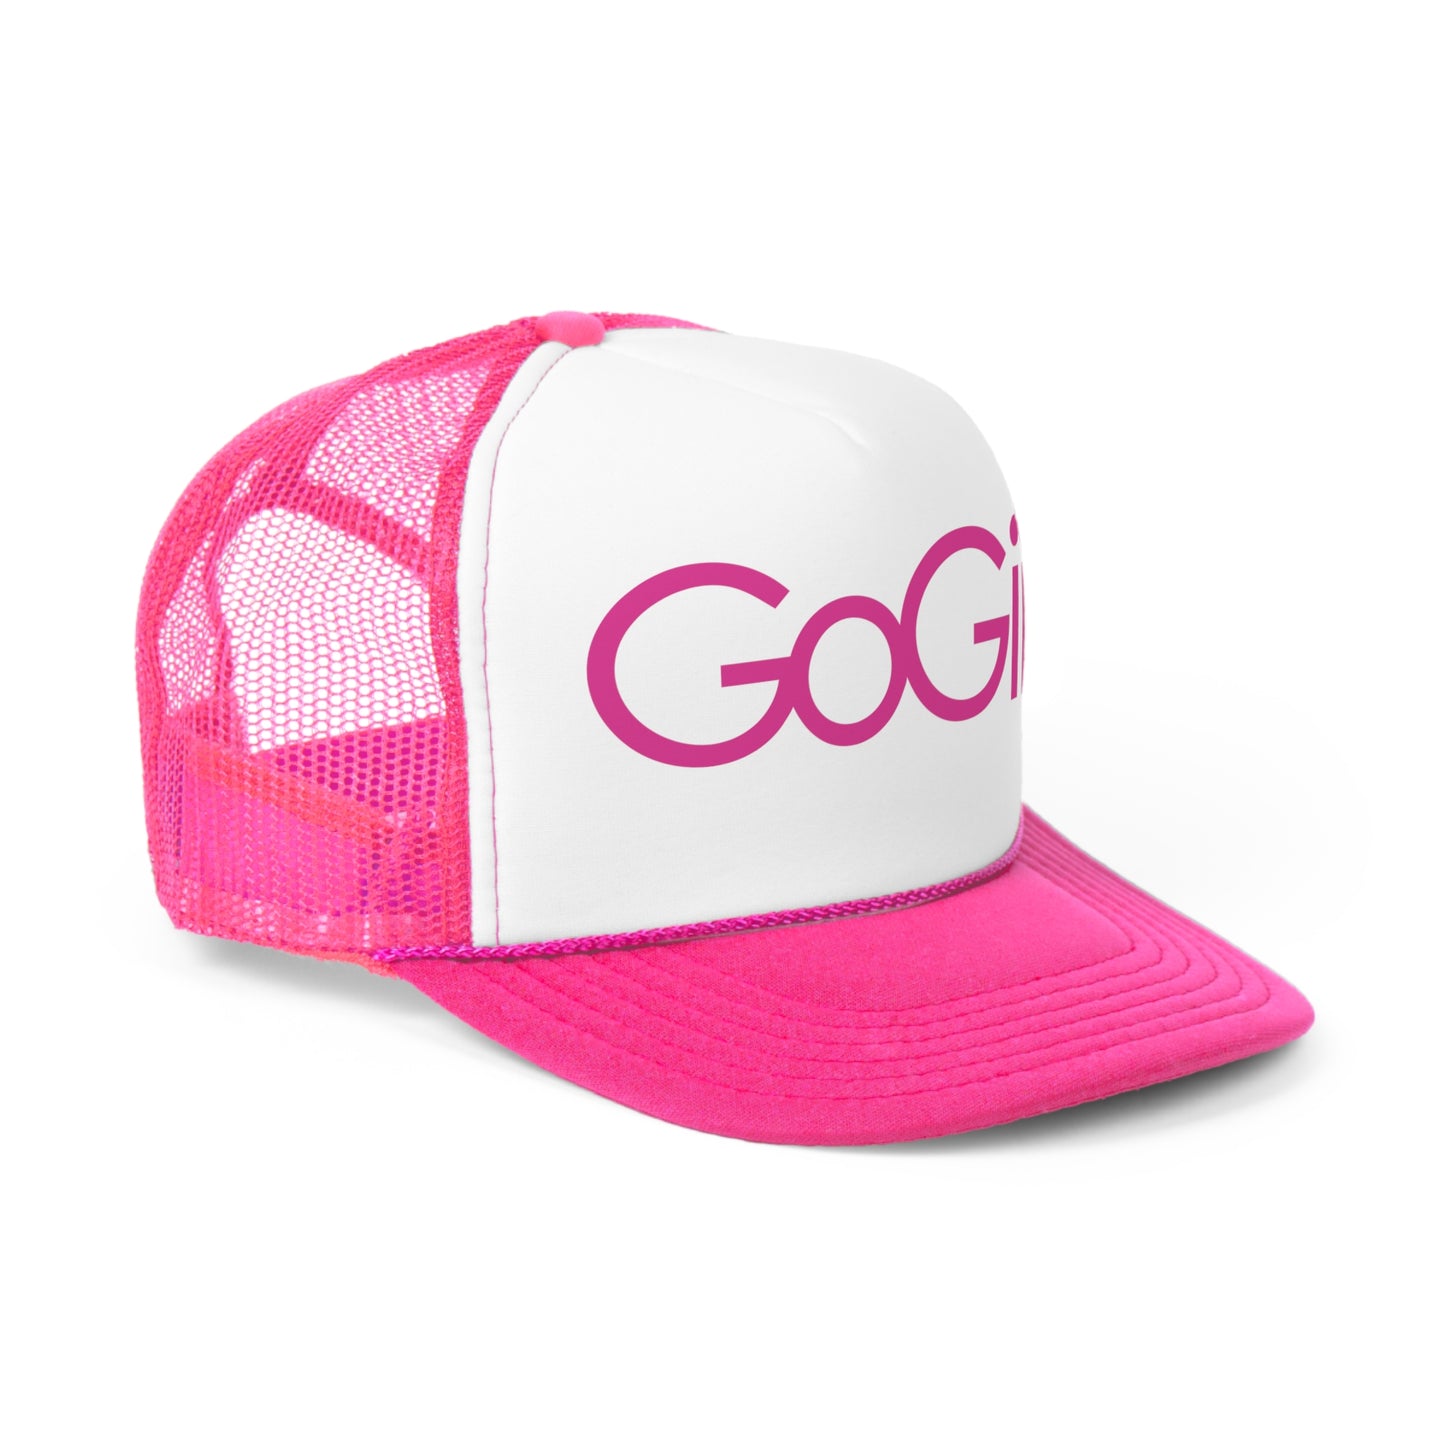 GoGirl Trucker Hat - Pink